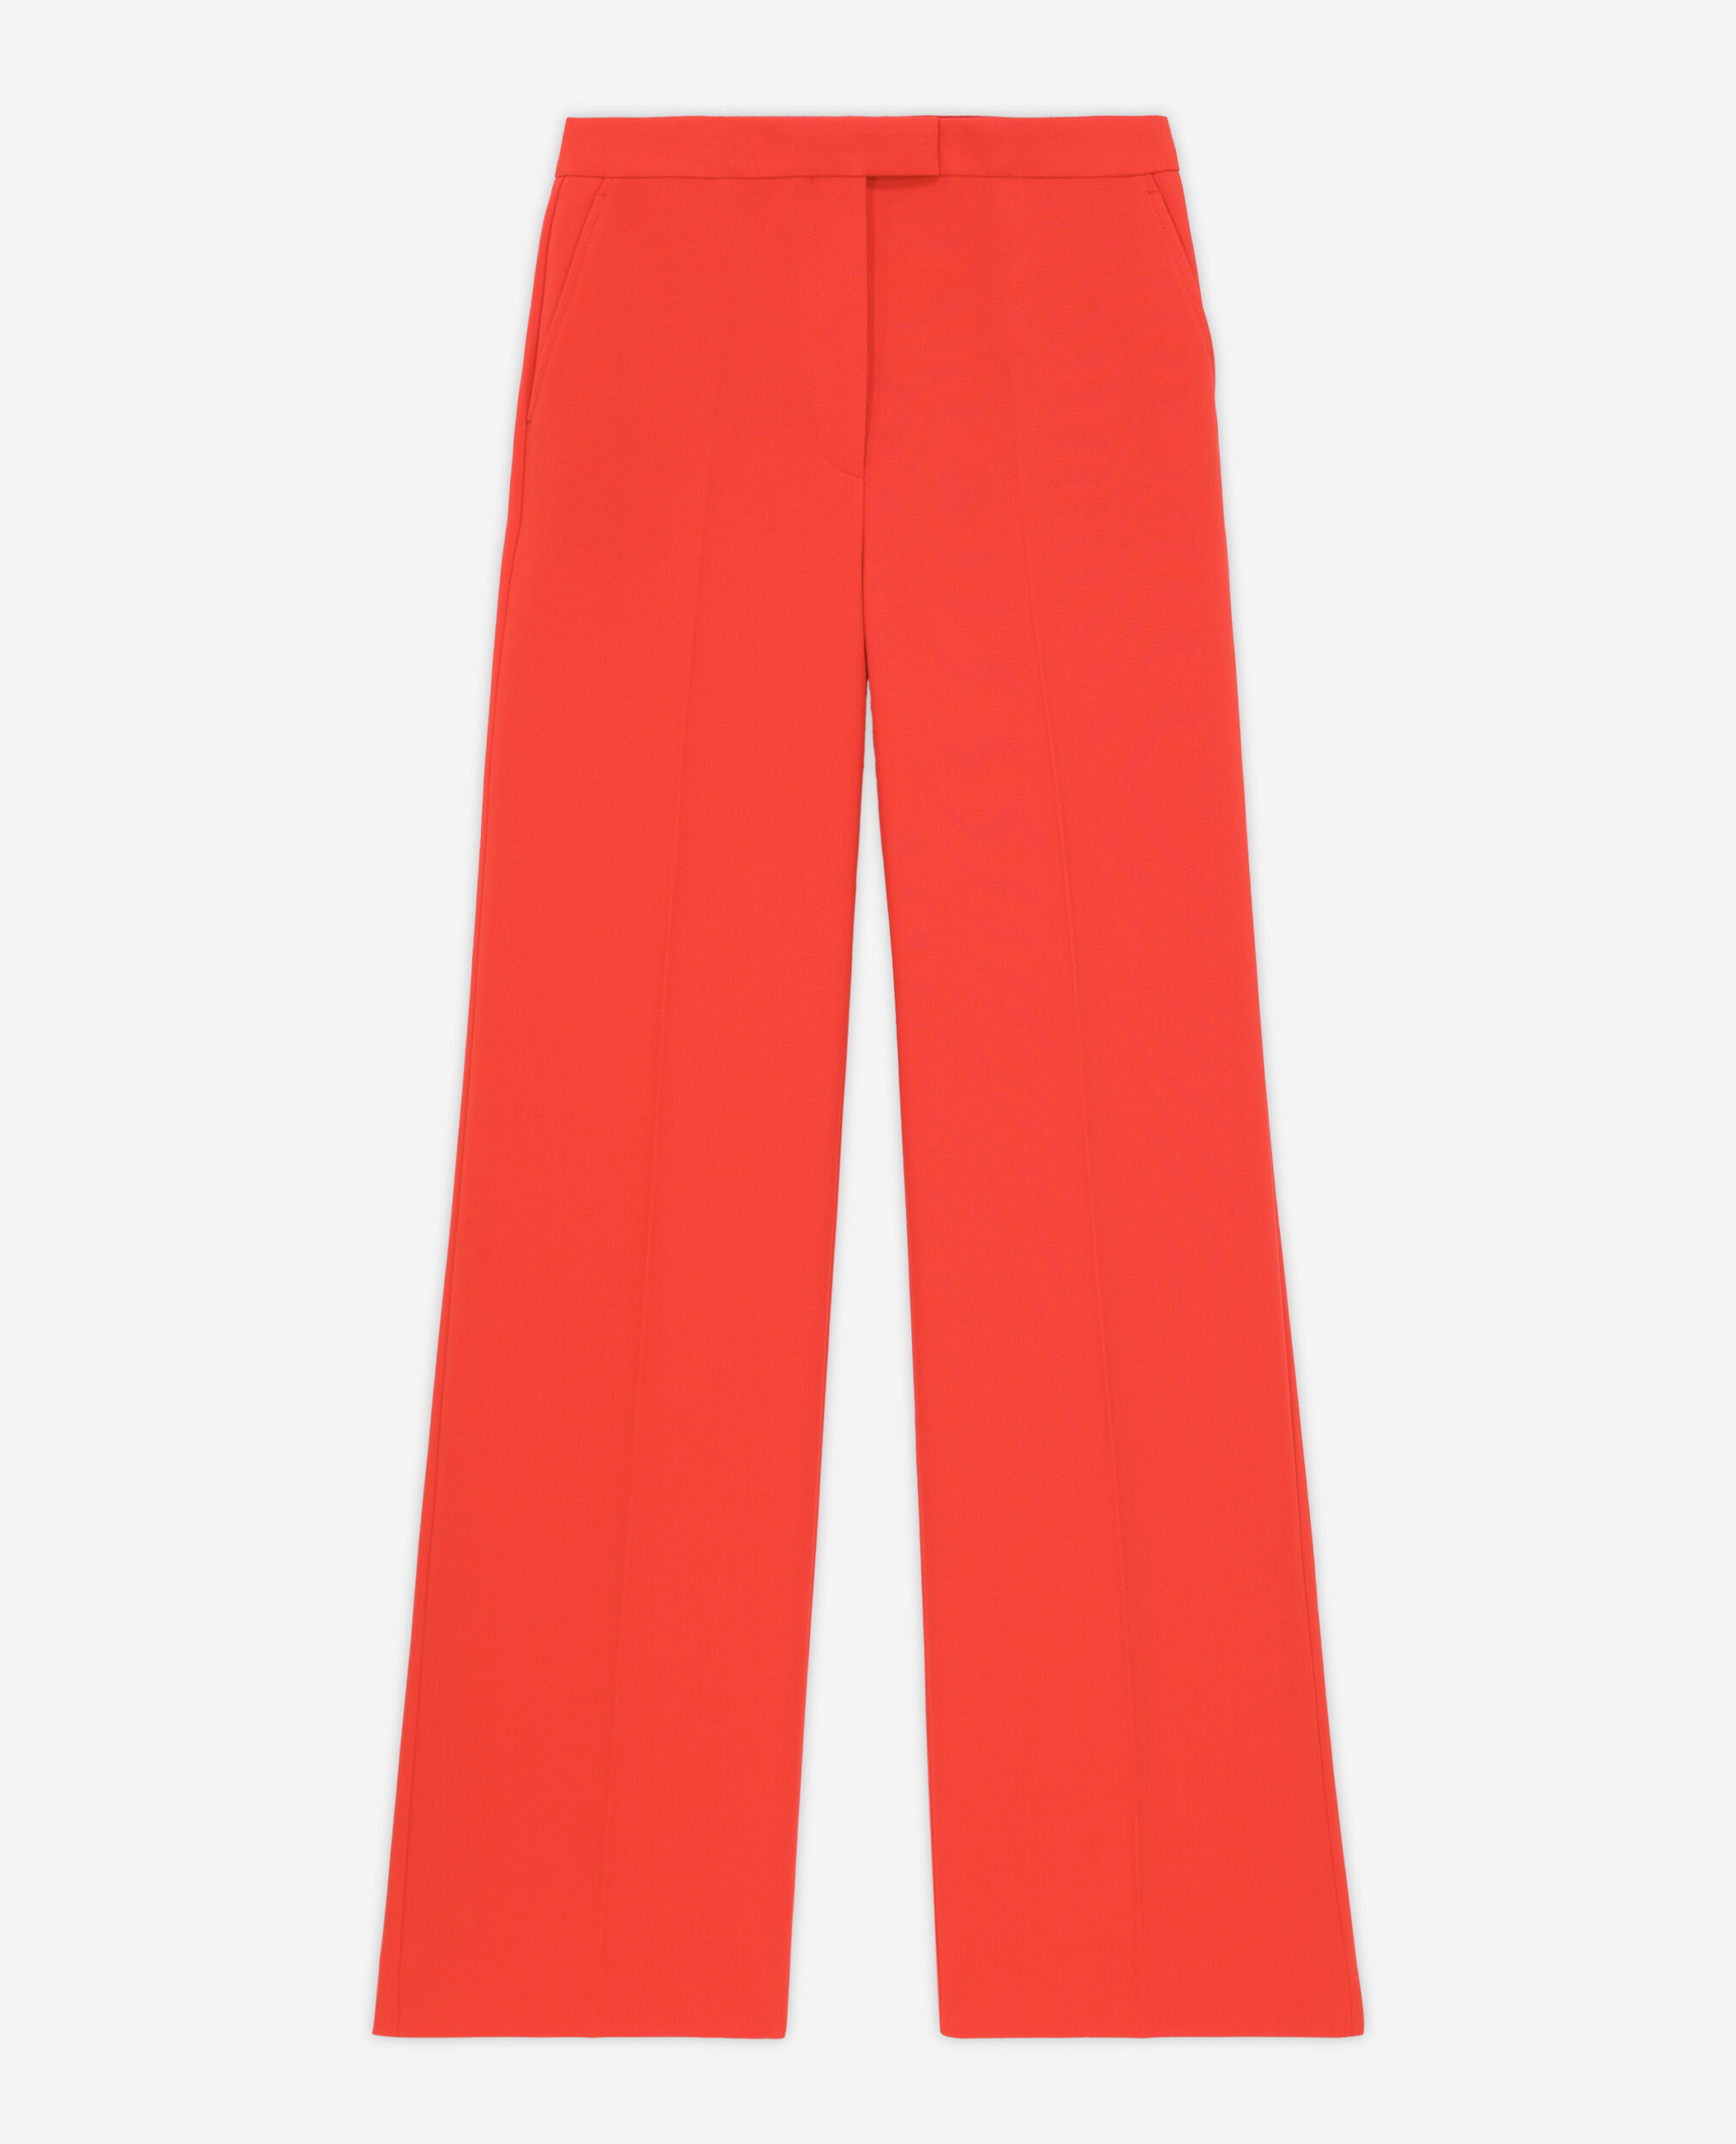 Pantalon tailleur orange en crêpe, ORANGE, hi-res image number null